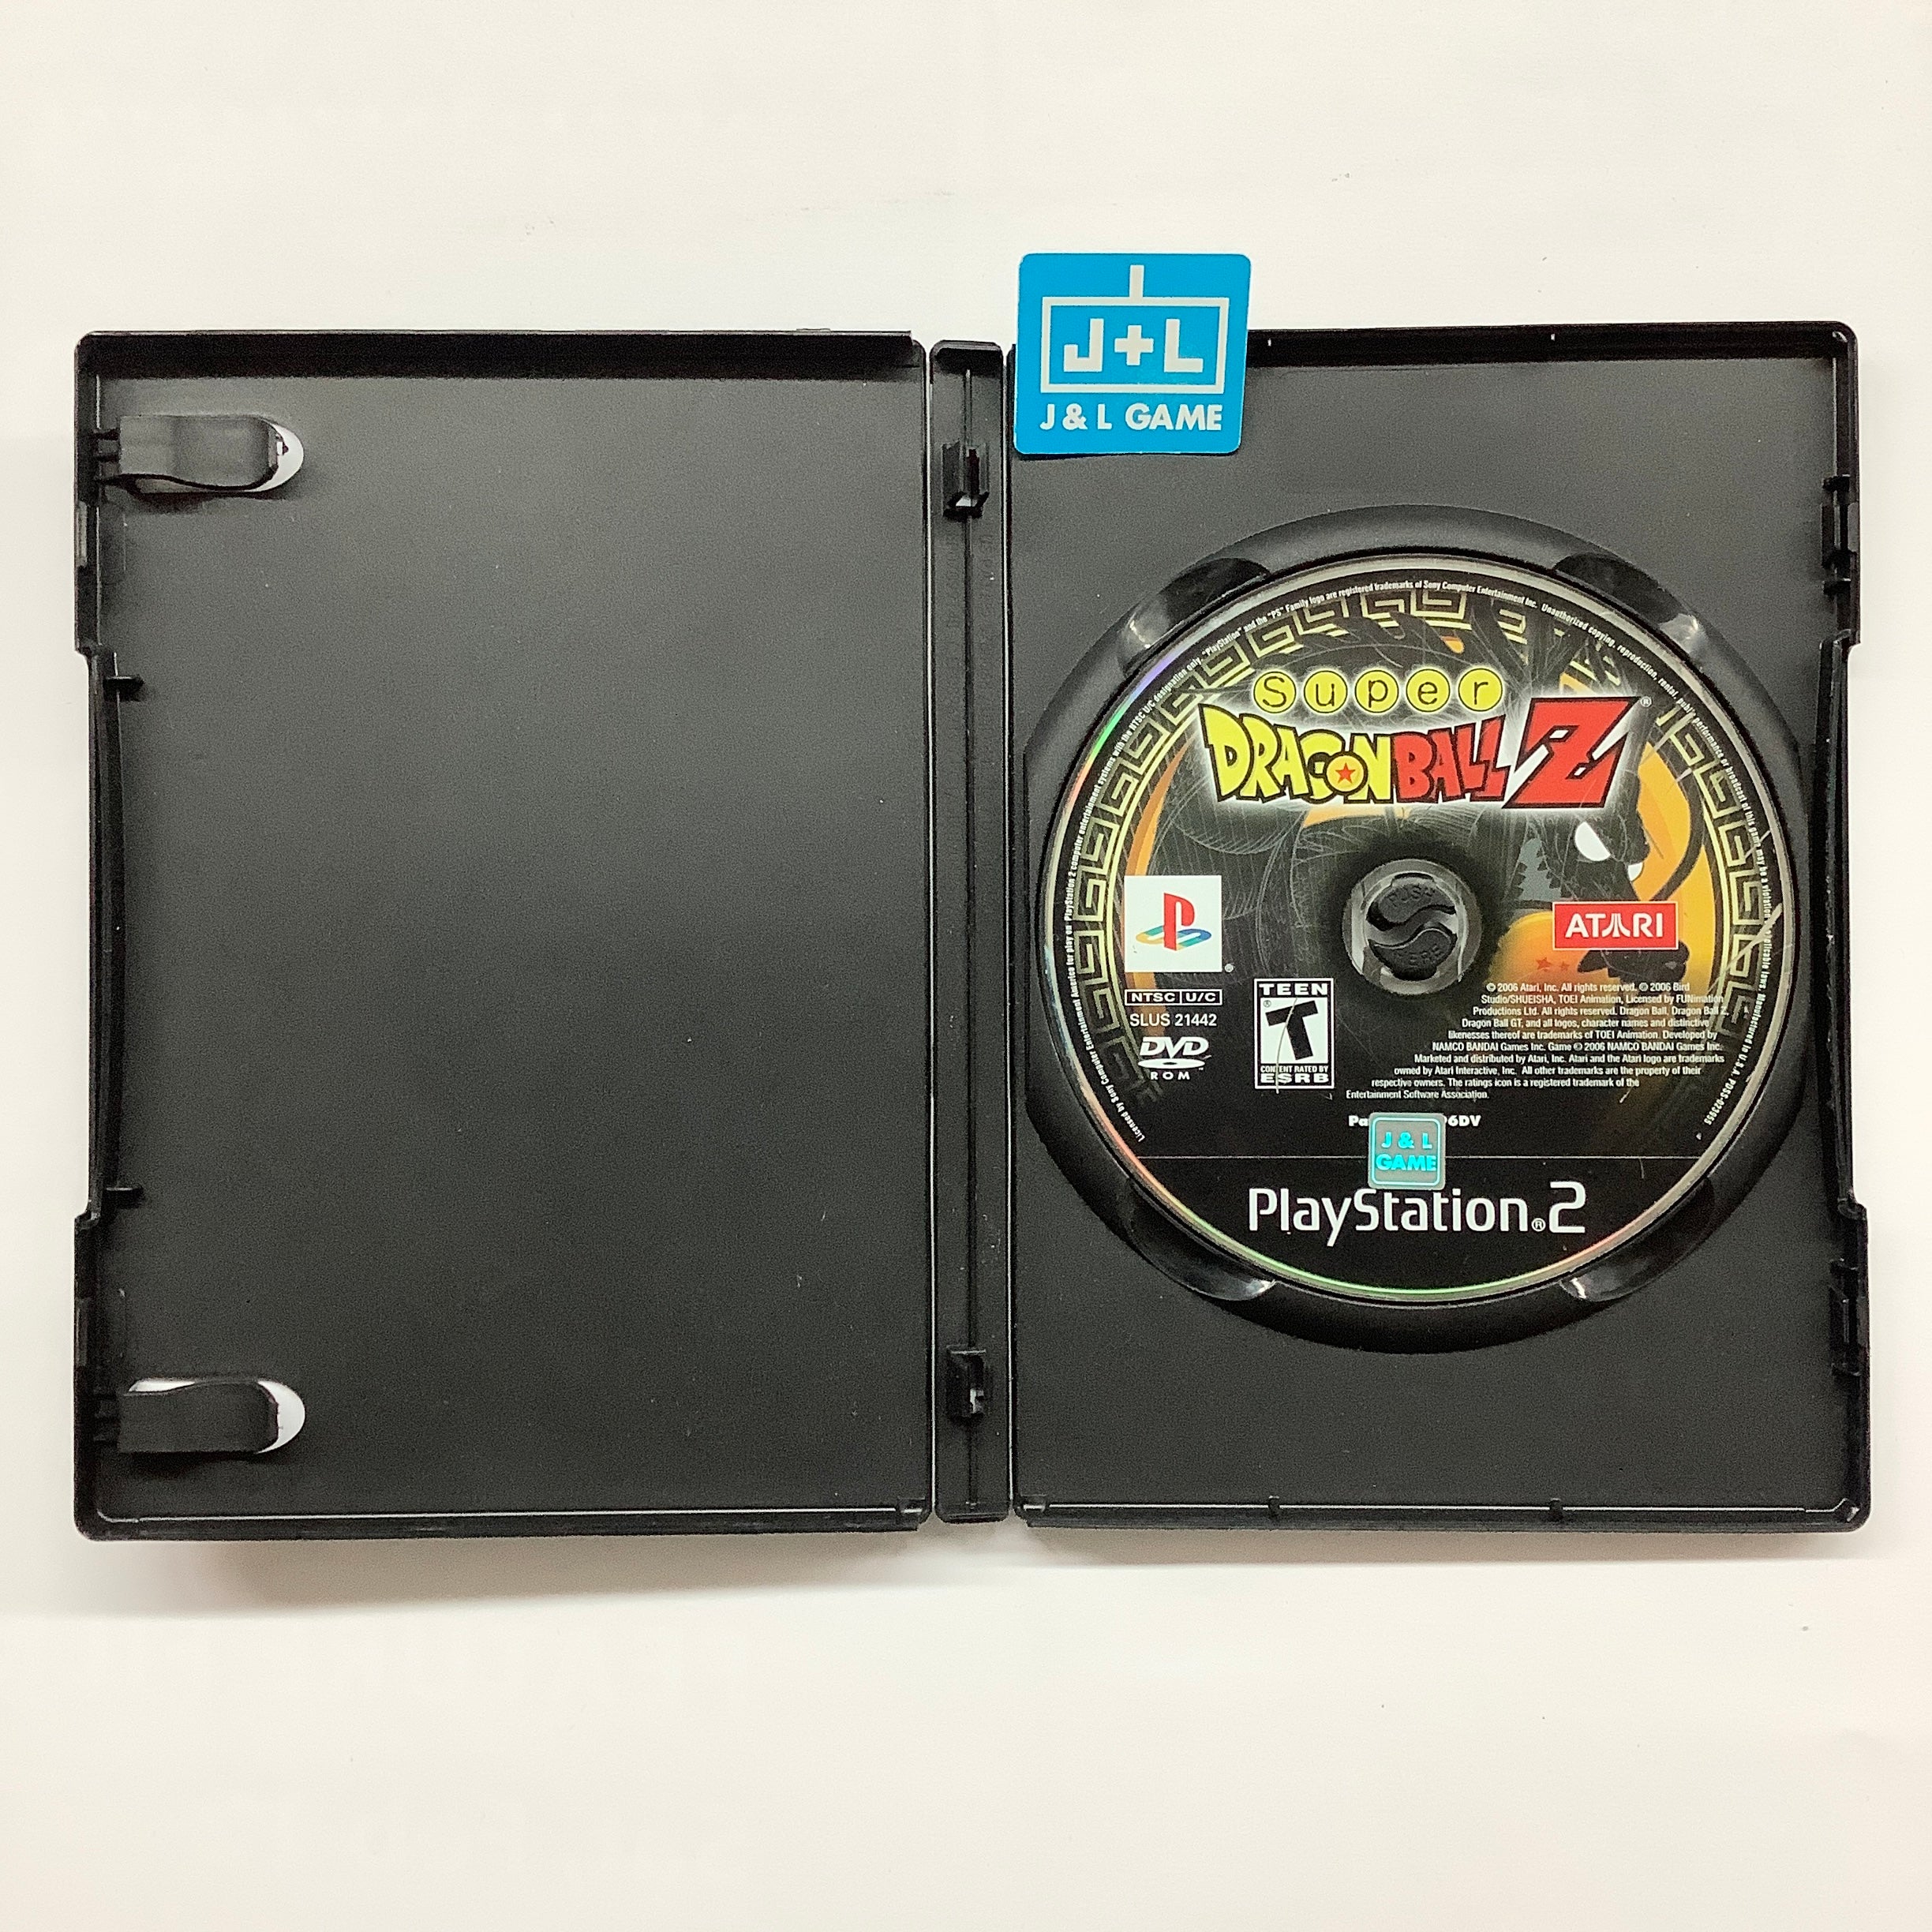 Super Dragon Ball Z - (PS2) PlayStation 2 [Pre-Owned] Video Games Atari SA   